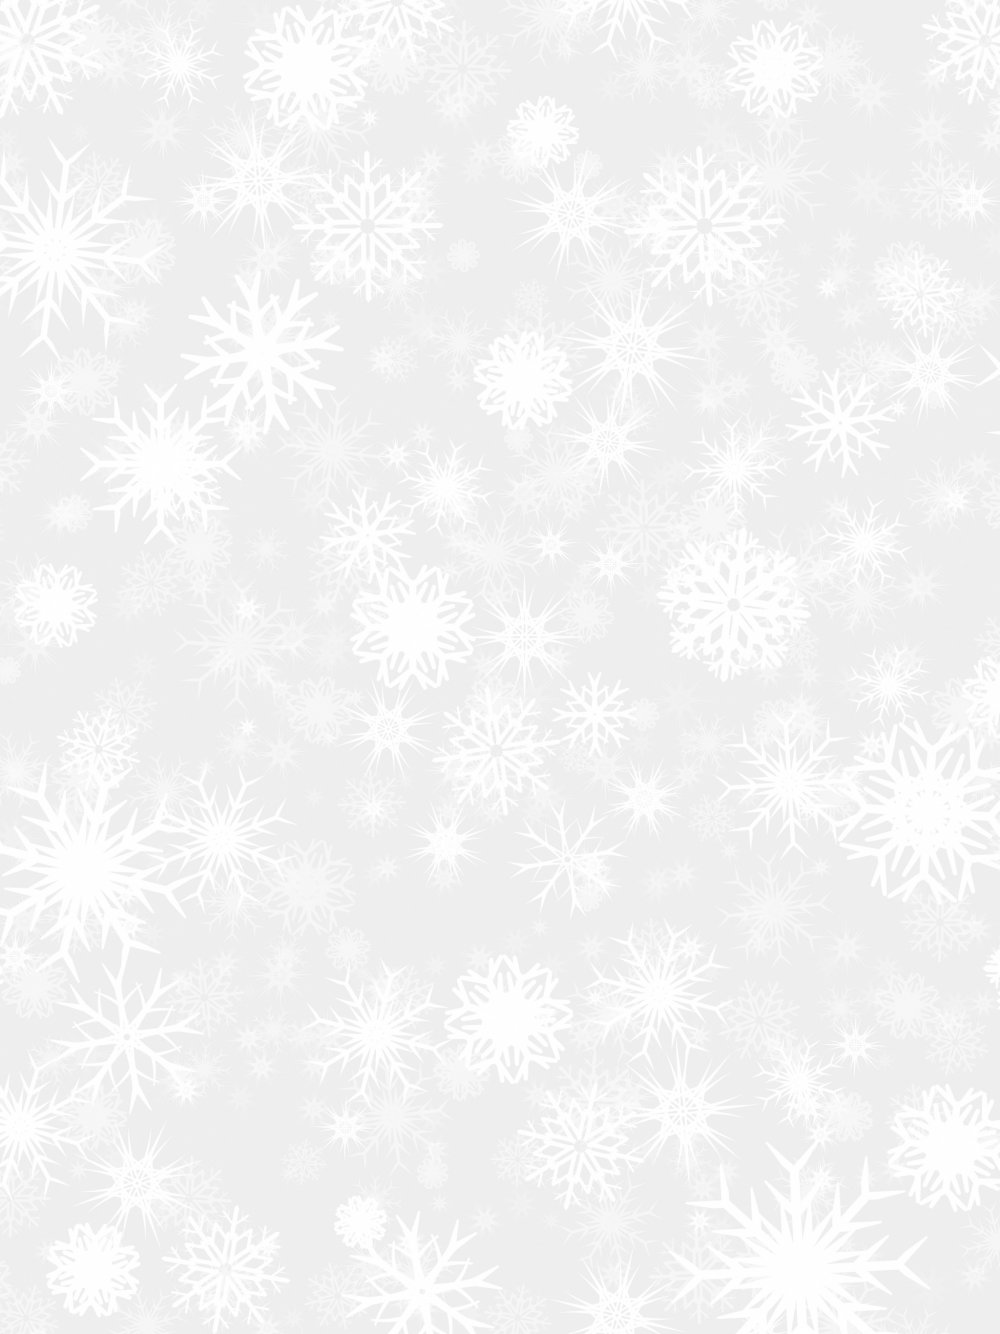 Фон снежинки на прозрачном фоне